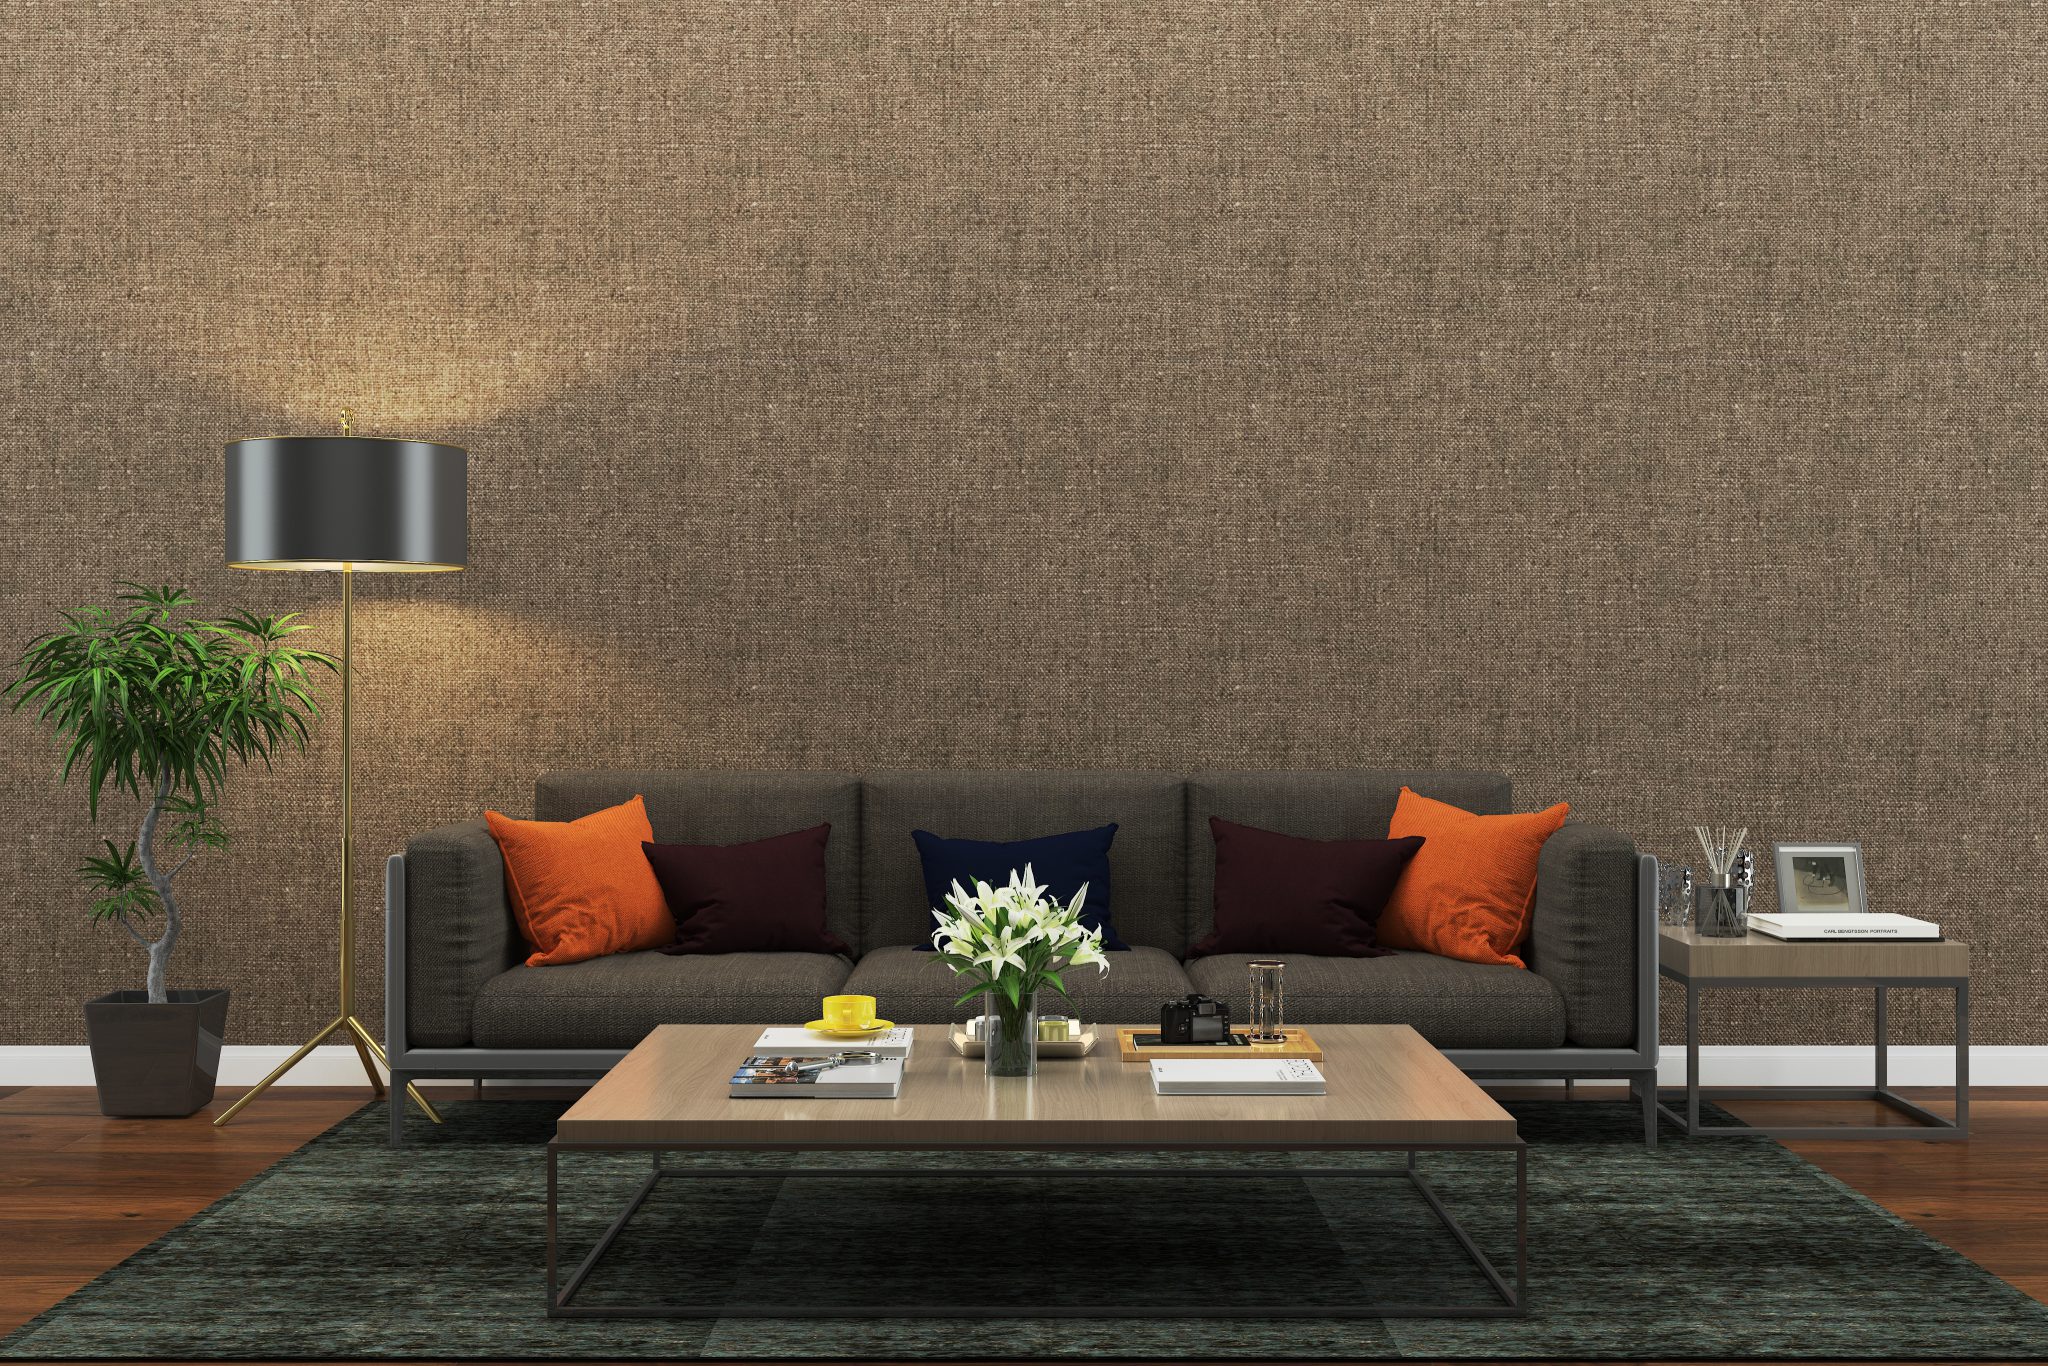 wallpaper for living room ideas